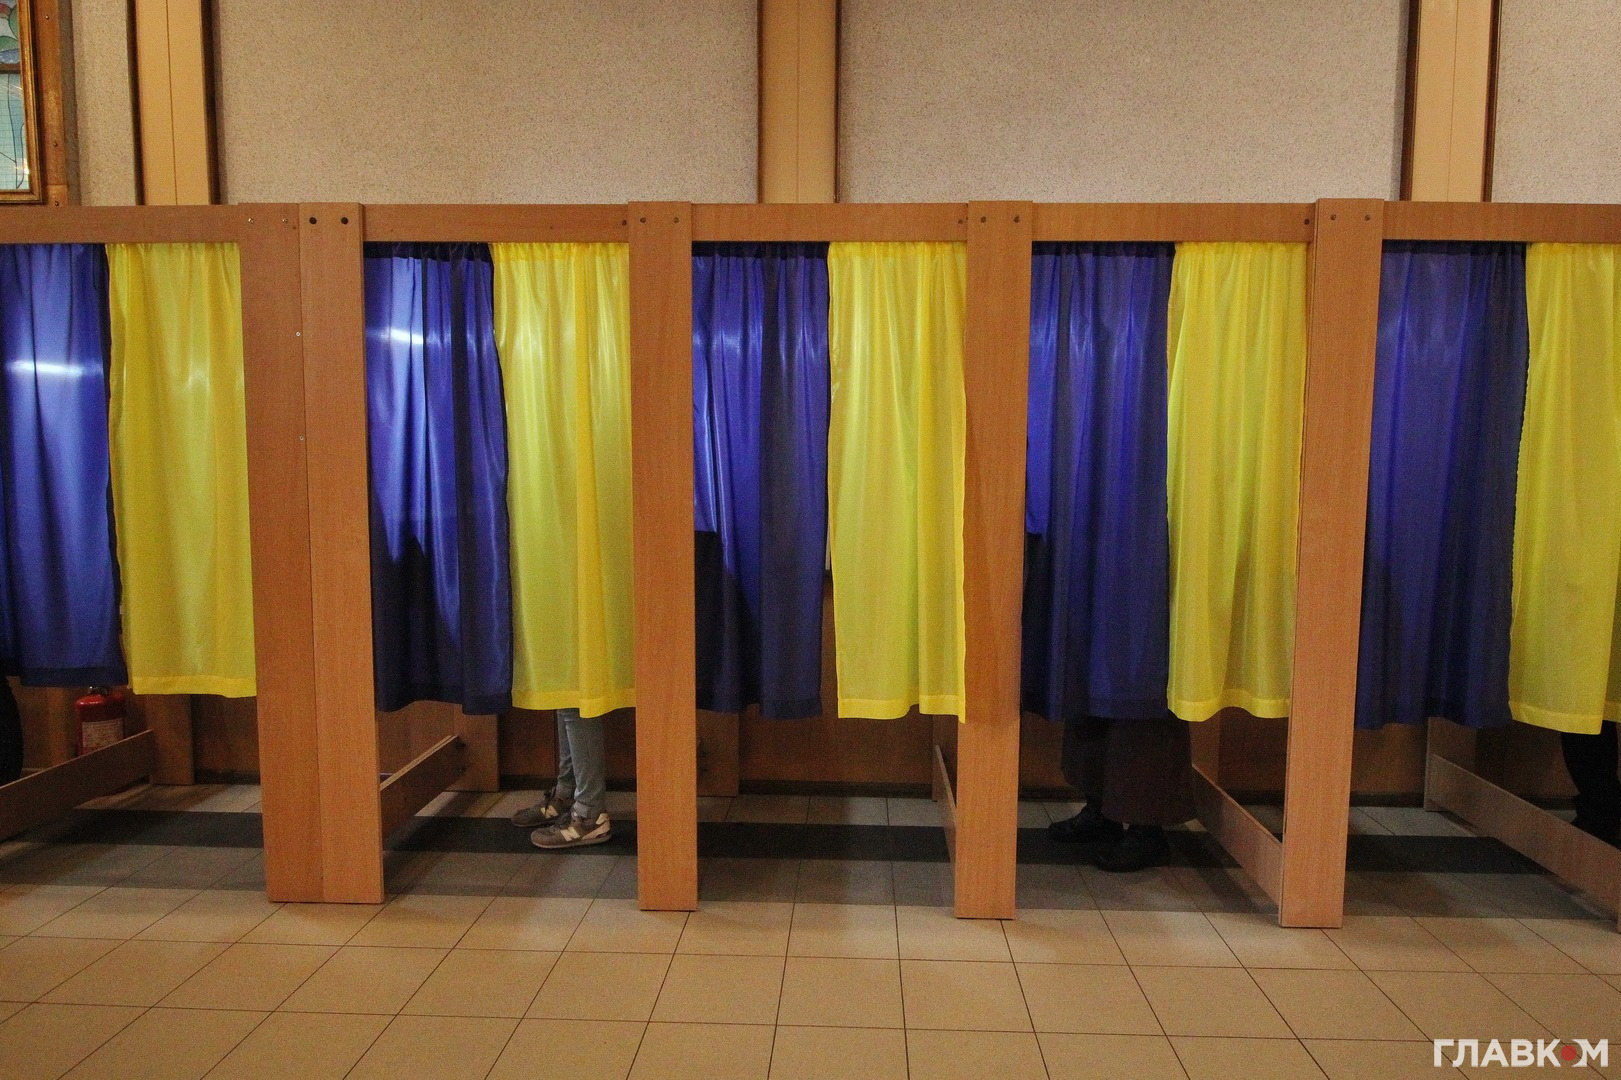 25 жовтня 2020 року в Україні відбудуться місцеві вибори